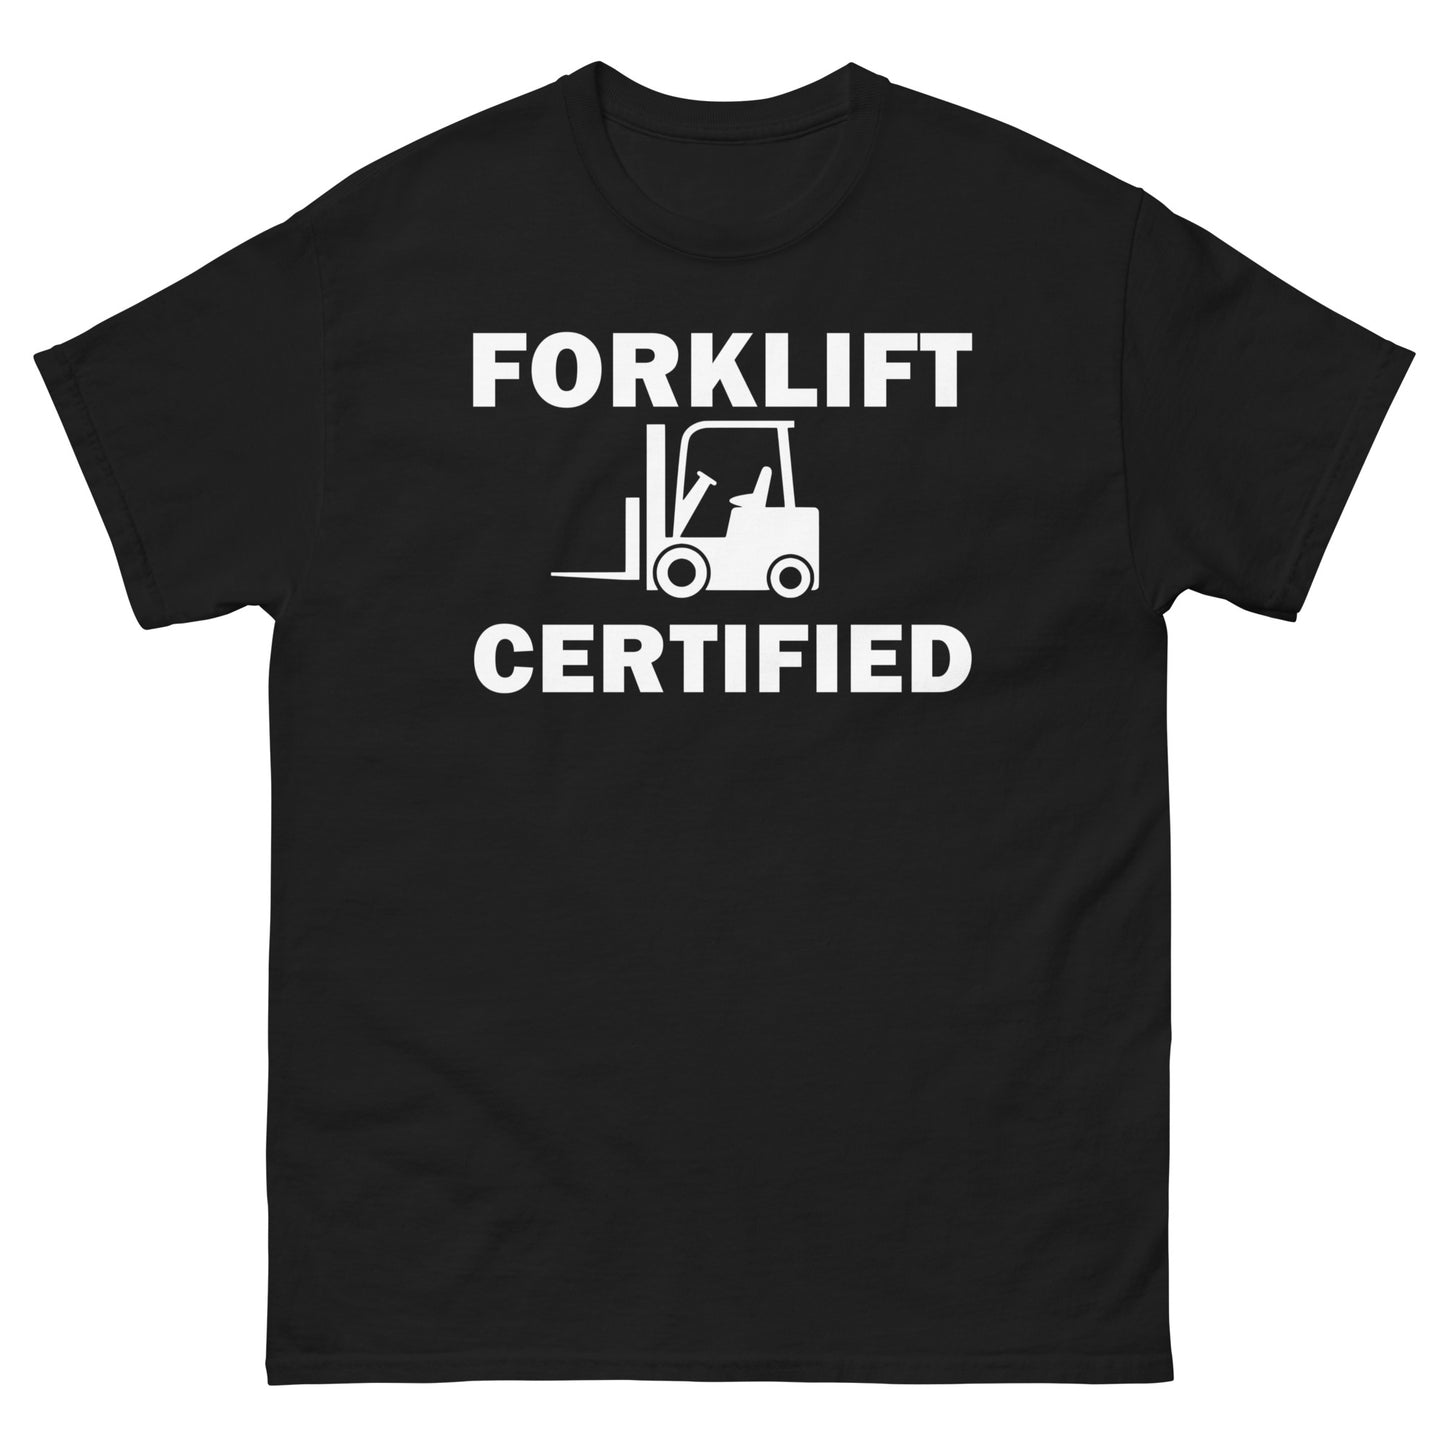 FORKLIFT CERTIFIED - Men's classic tee